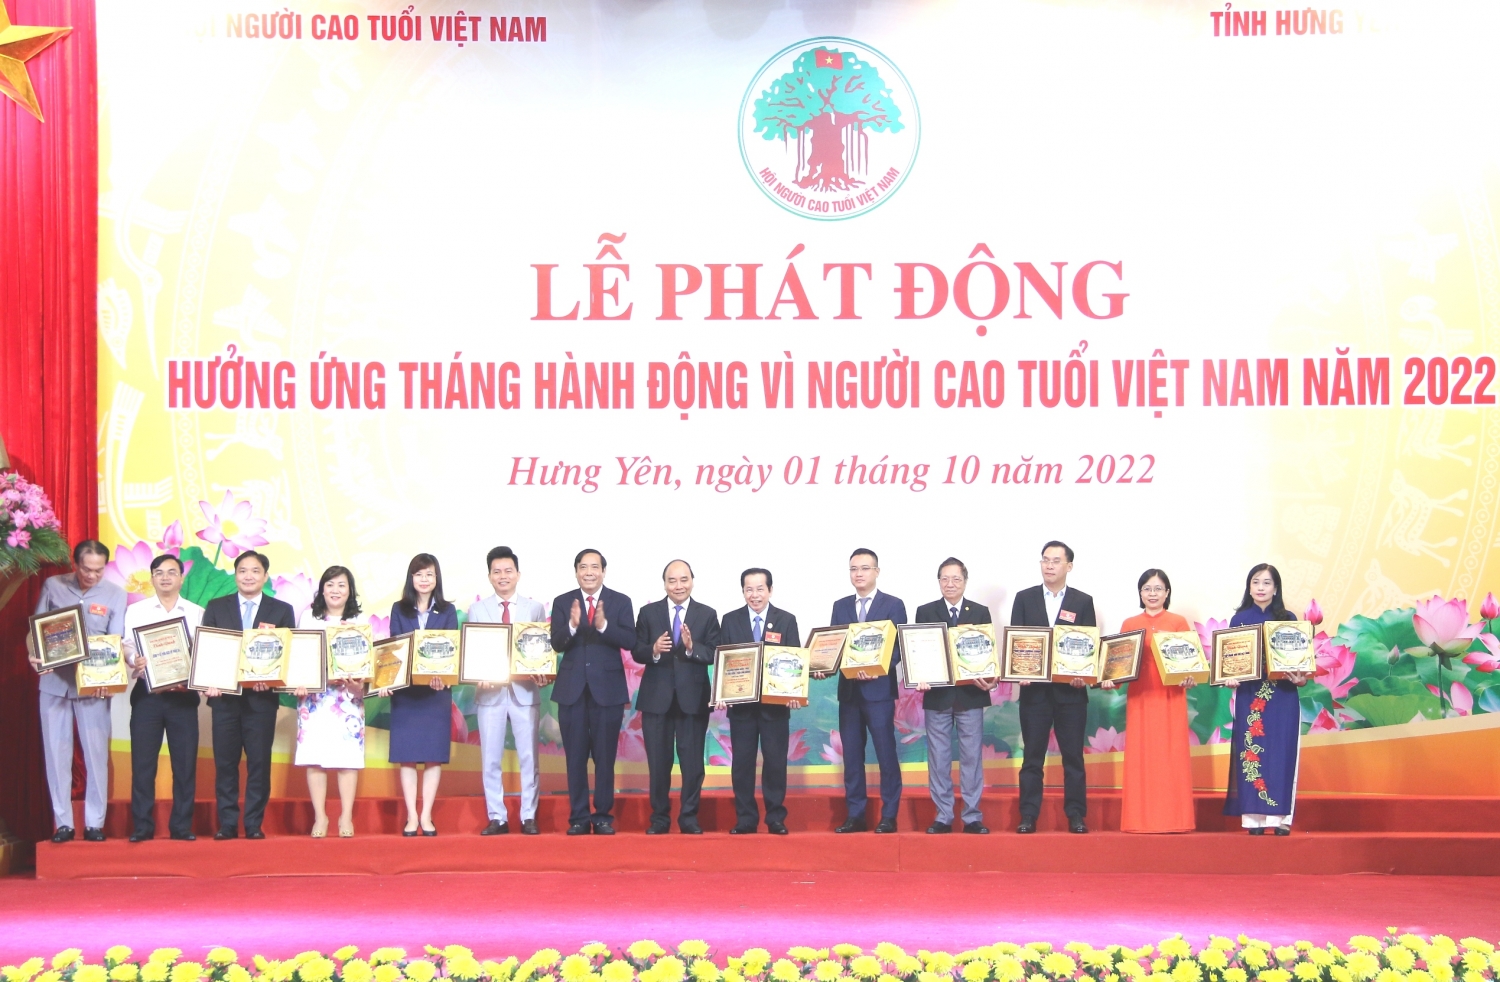 Petrovietnam hưởng ứng tháng hành động vì Người cao tuổi Việt Nam năm 2022”